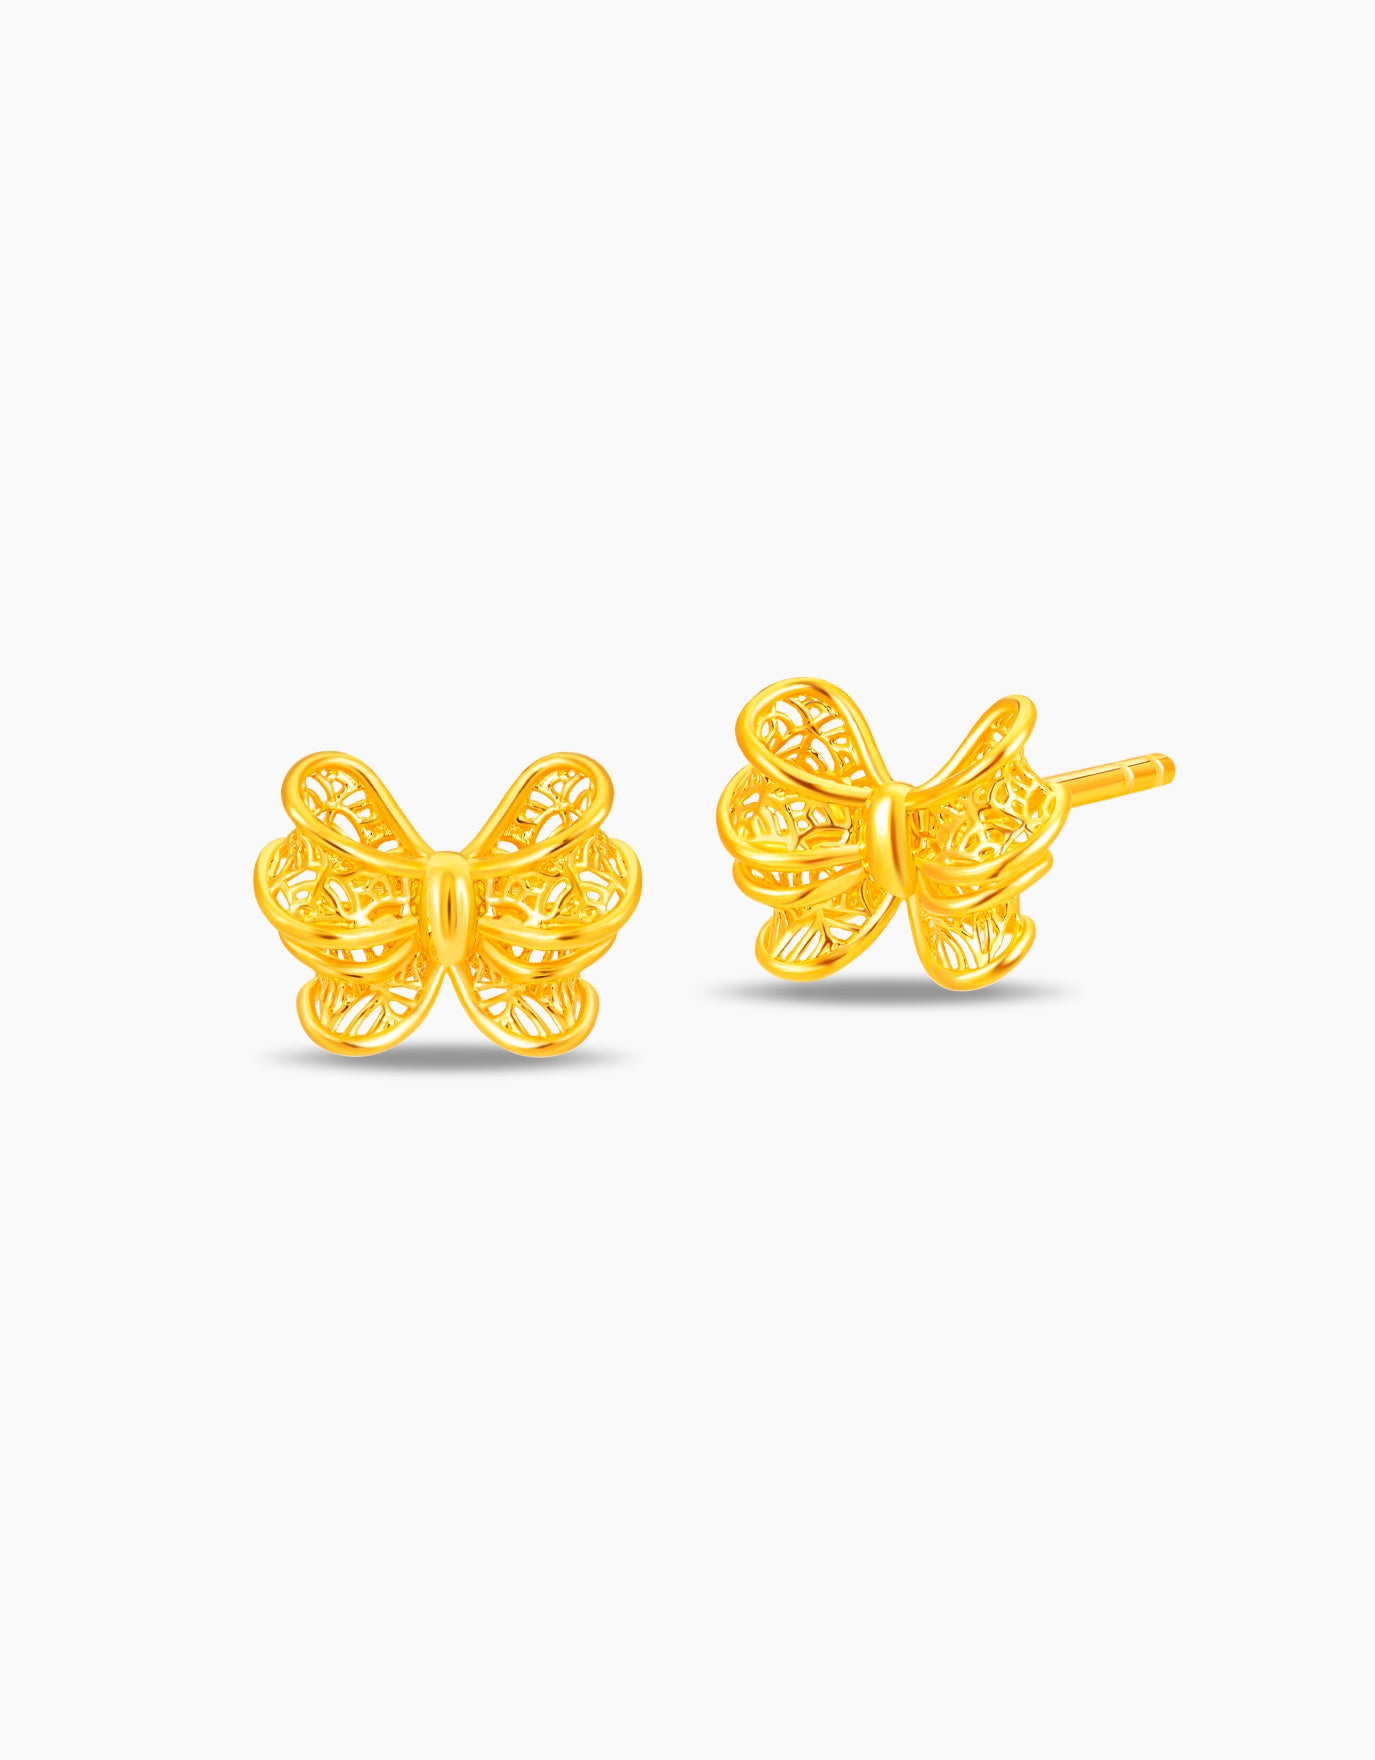 LVC 9IN Delicate Bow 999 Gold Earrings